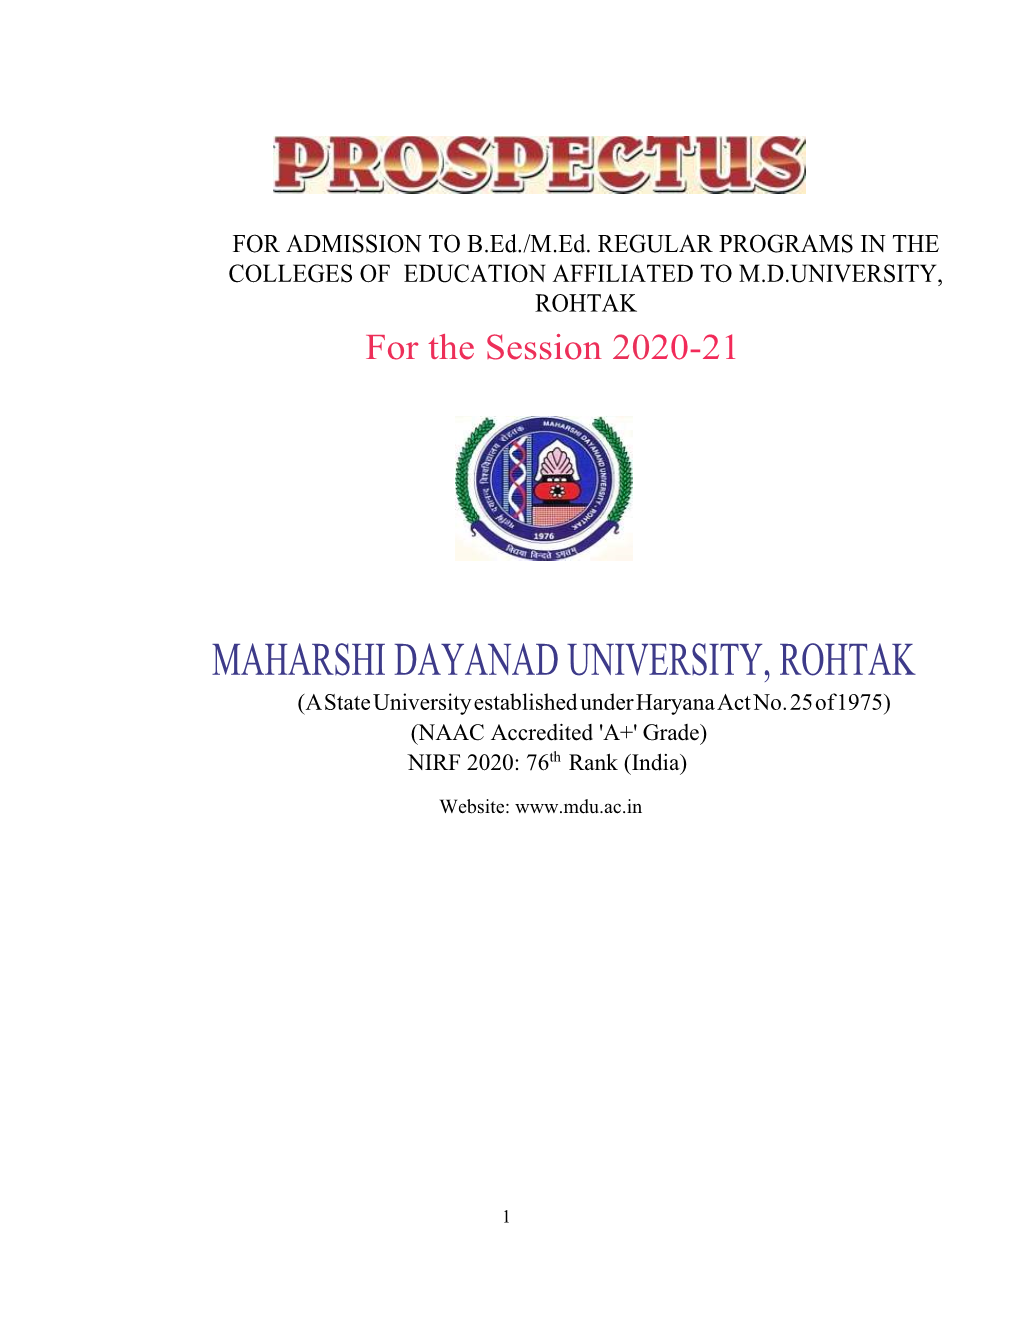 MAHARSHI DAYANAD UNIVERSITY, ROHTAK (A State University Established Under Haryana Act No